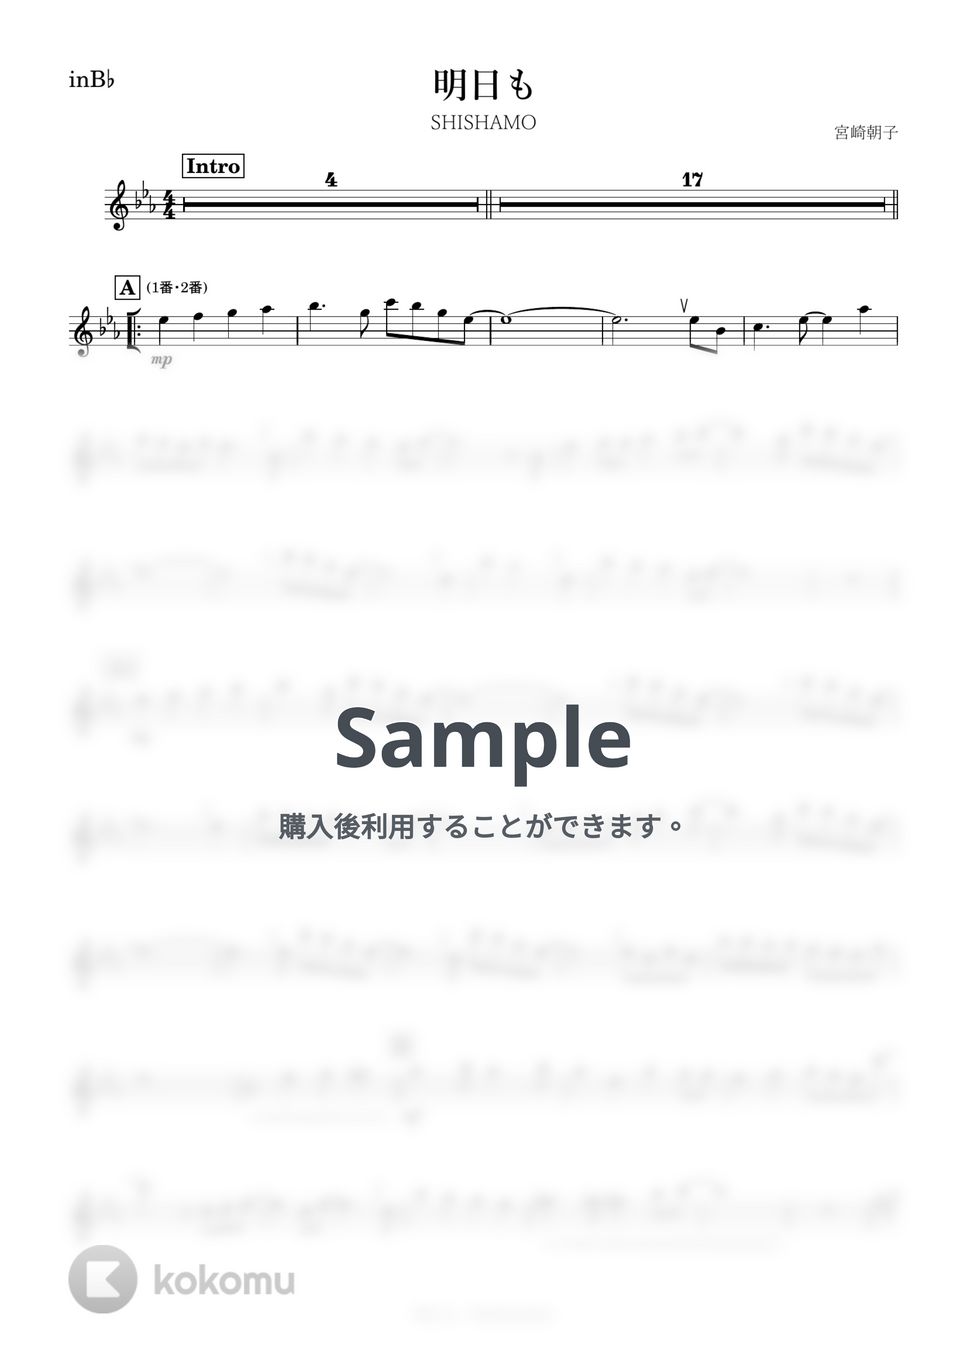 SHISHAMO - 明日も (B♭) by kanamusic